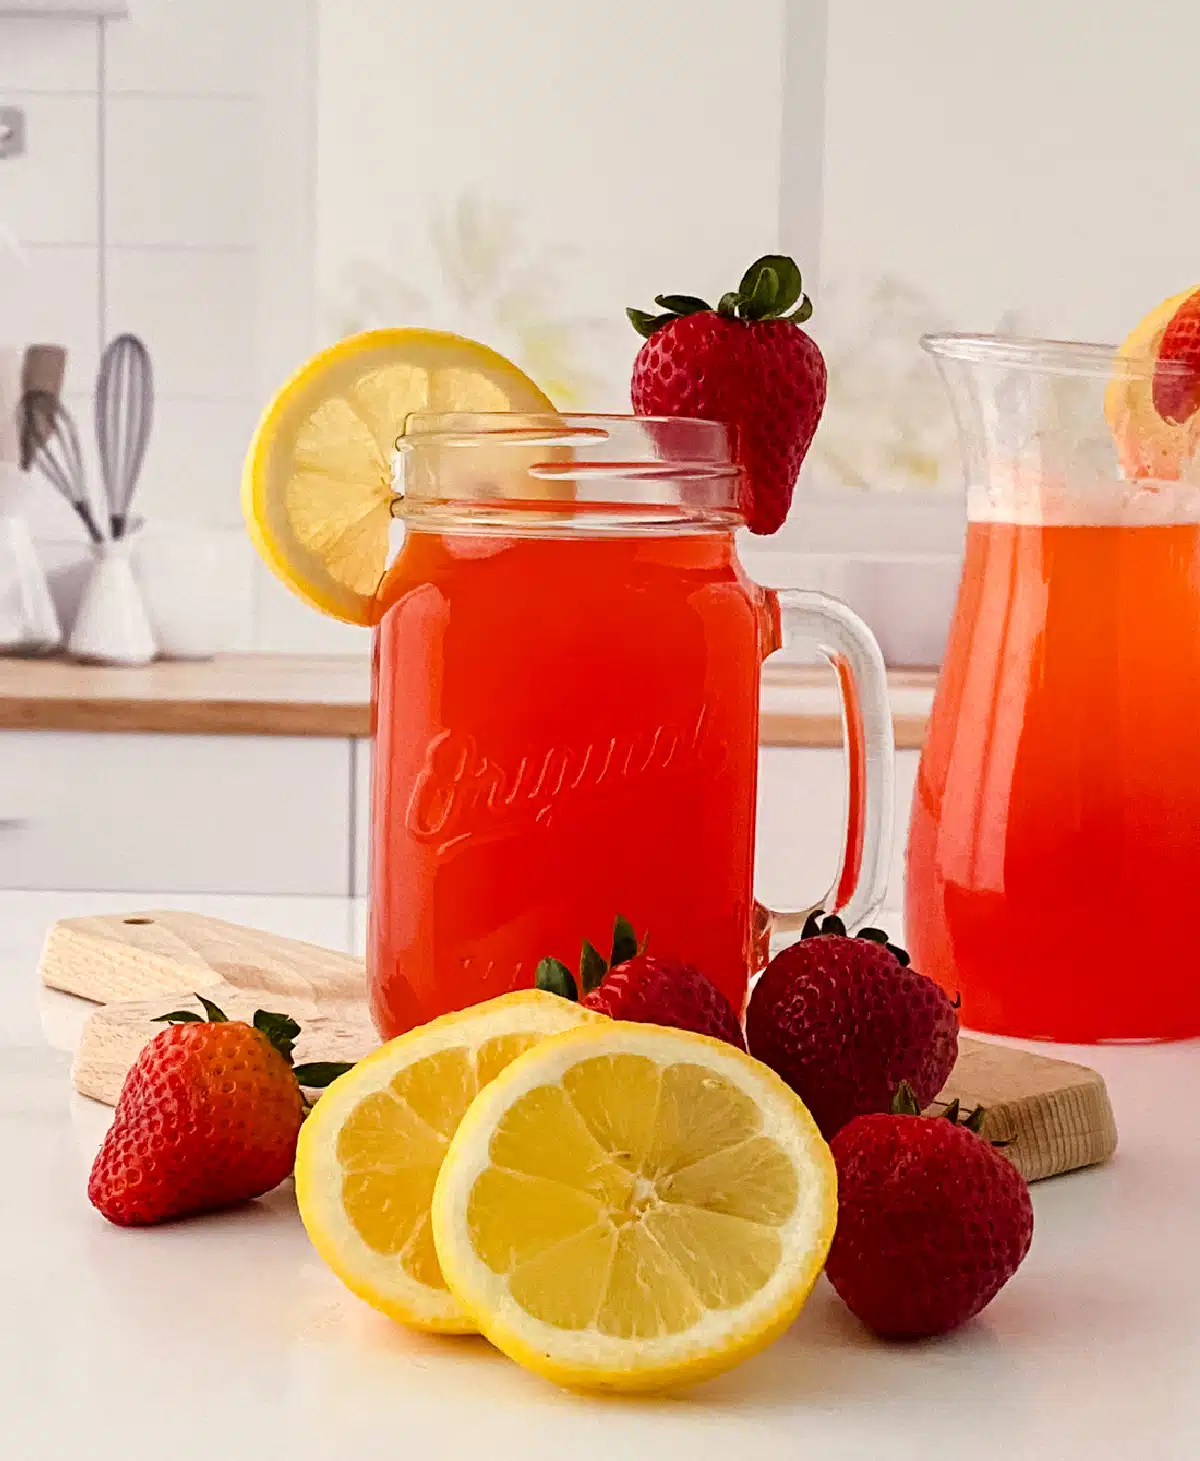 homemade strawberry lemonade with lemon slices